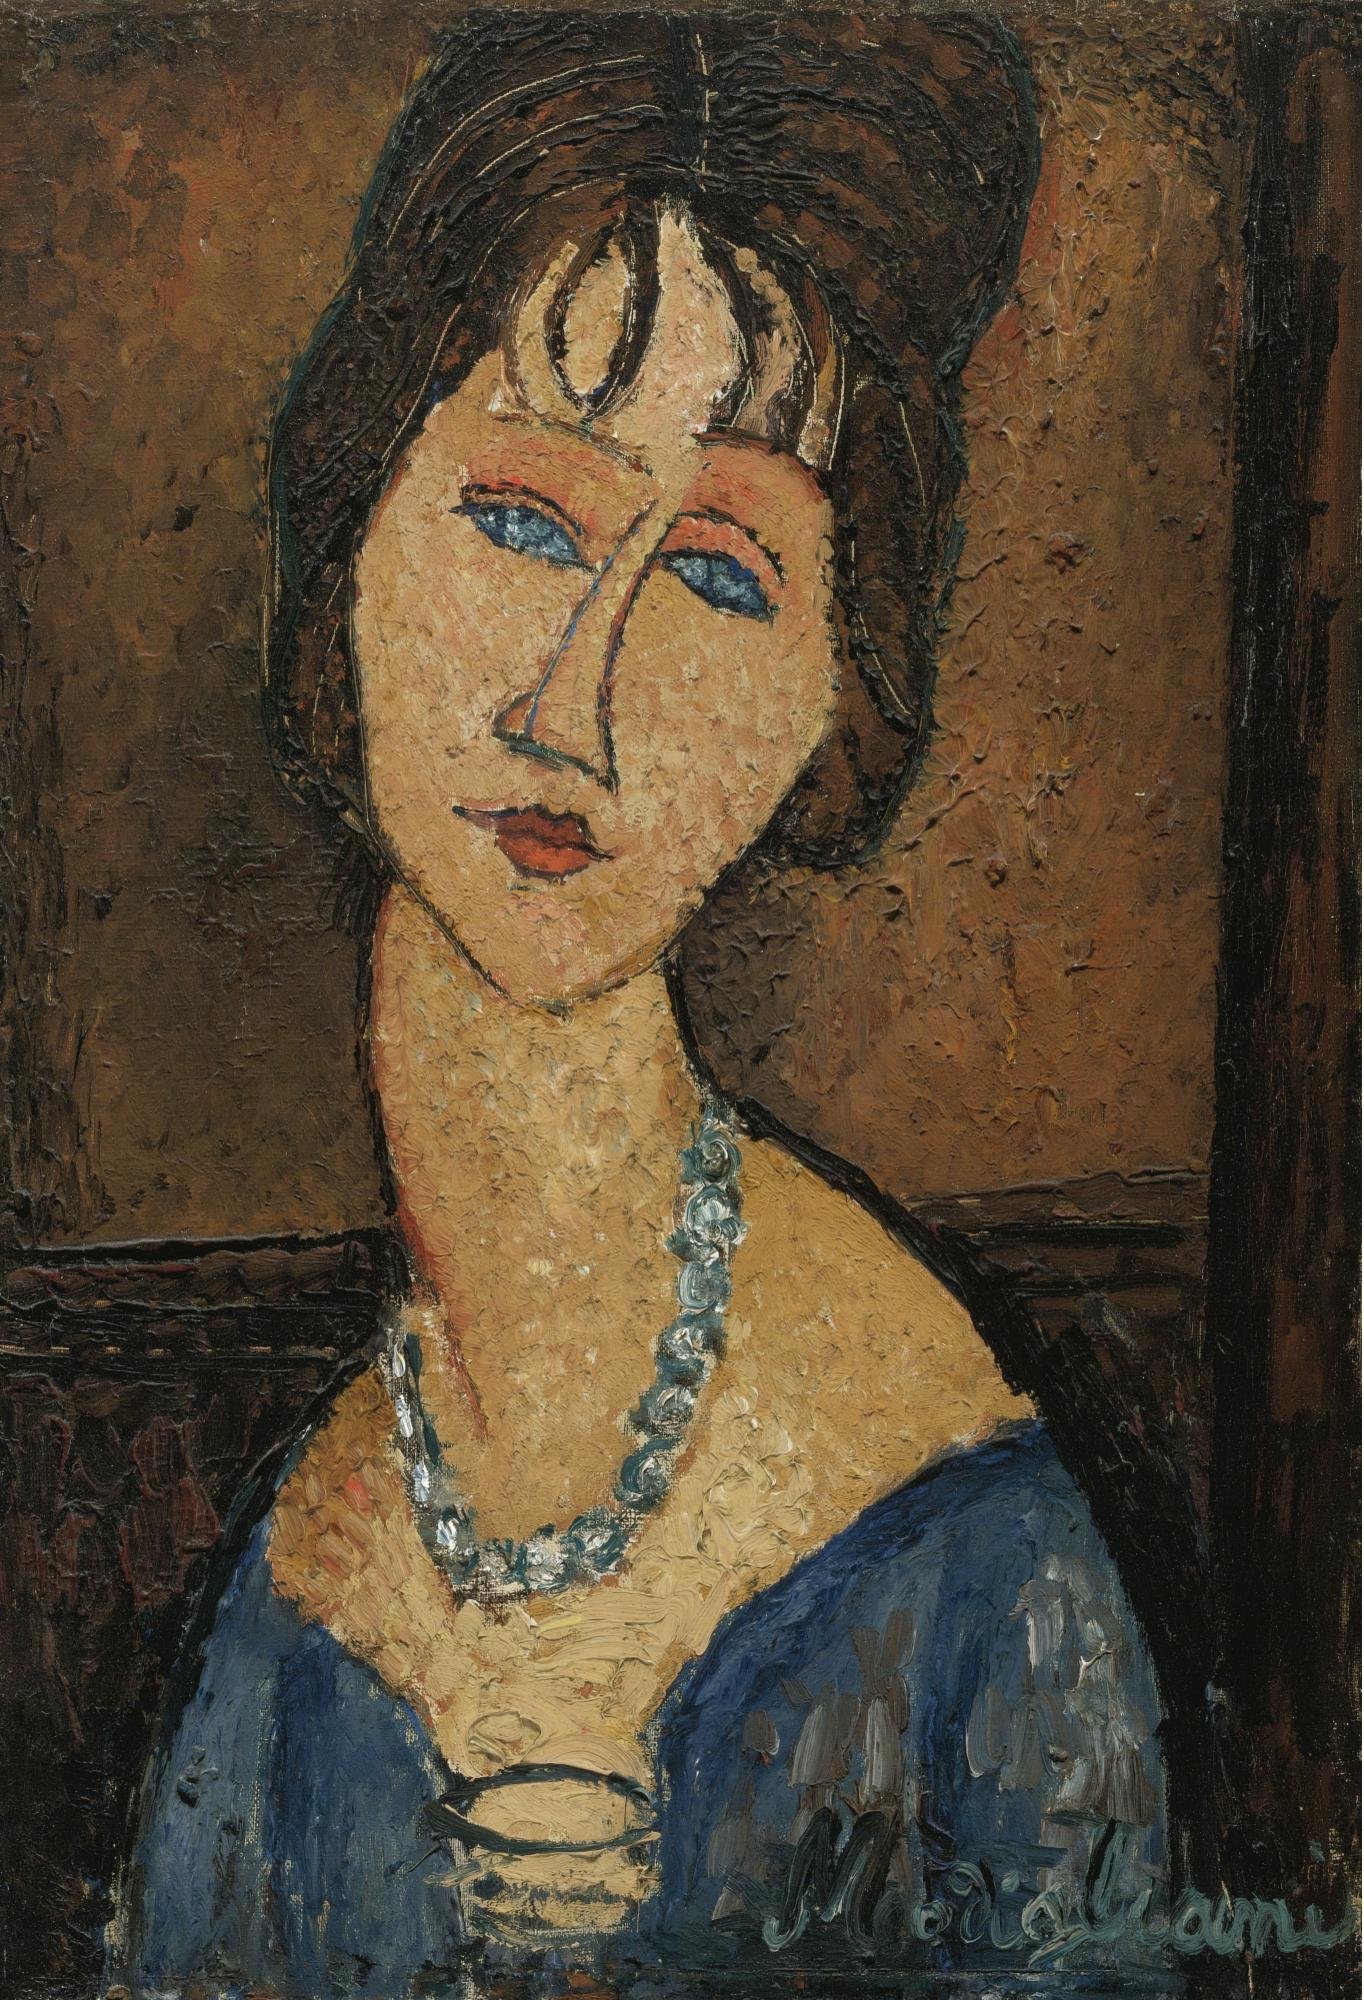 Més obres falses que veritables en una exposició de Modigliani?